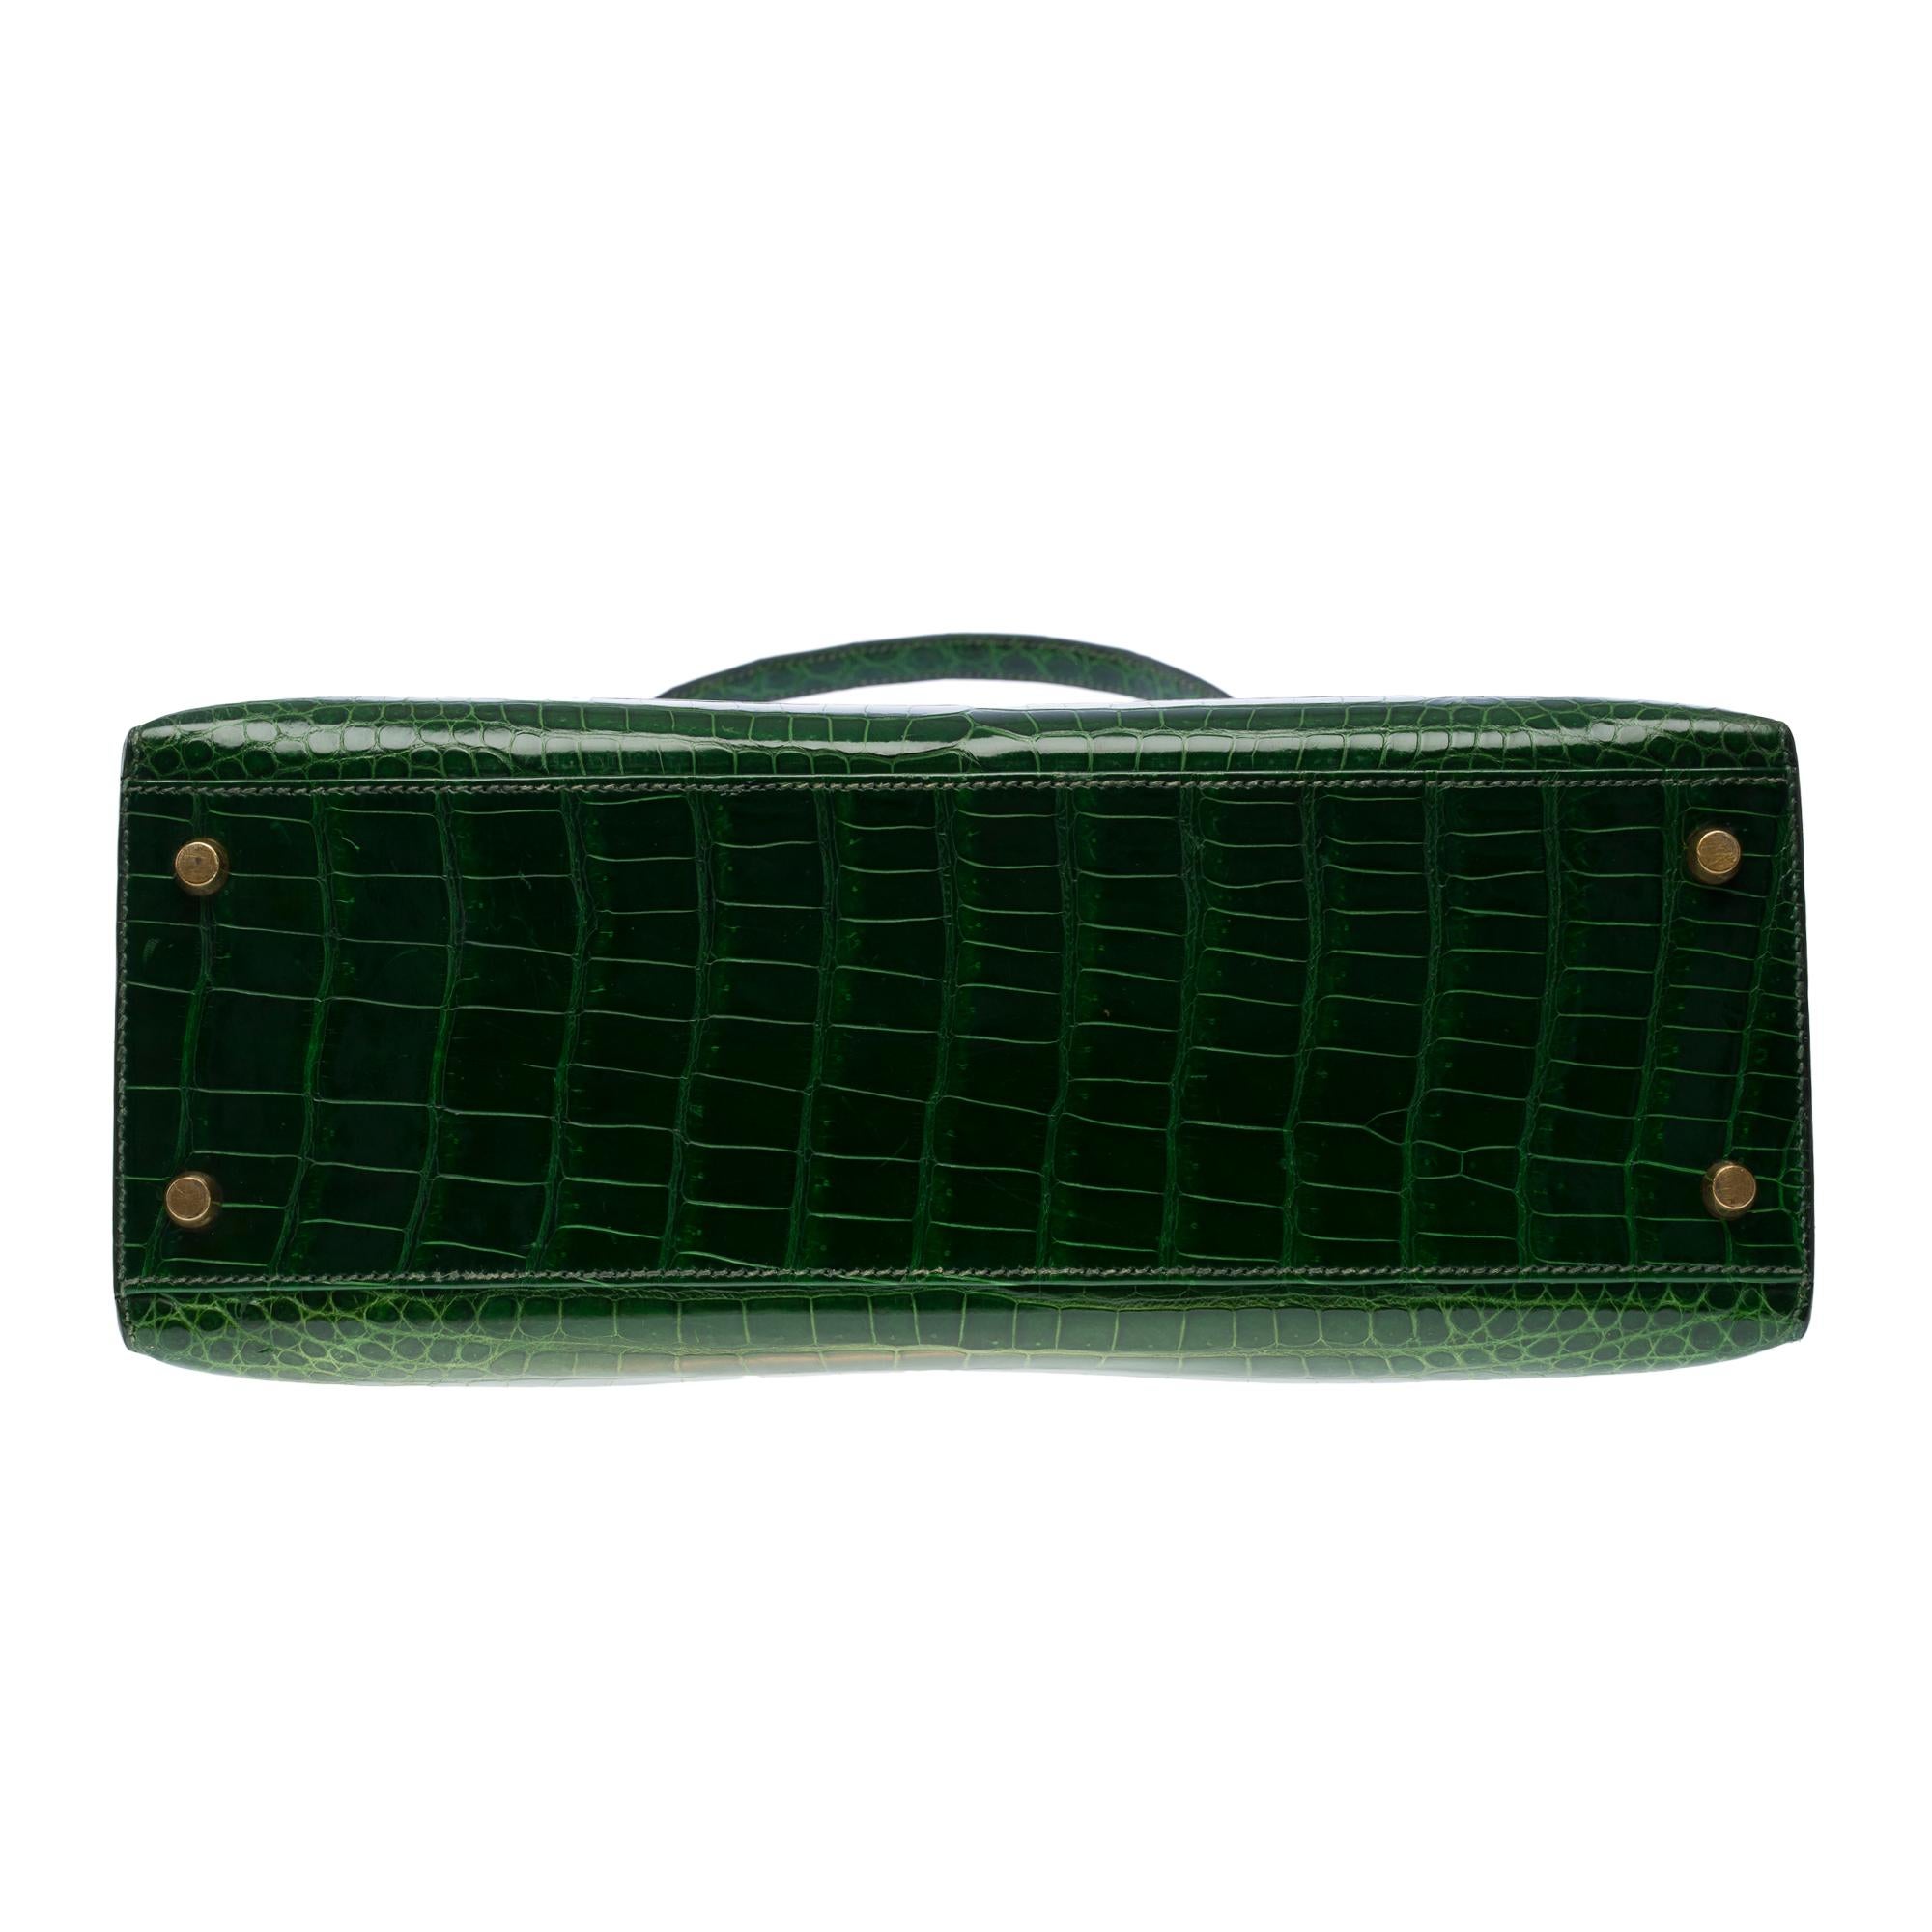 Rare Hermès Kelly 32 saddle handbag strap in Green Emerald Crocodilylus , GHW 6